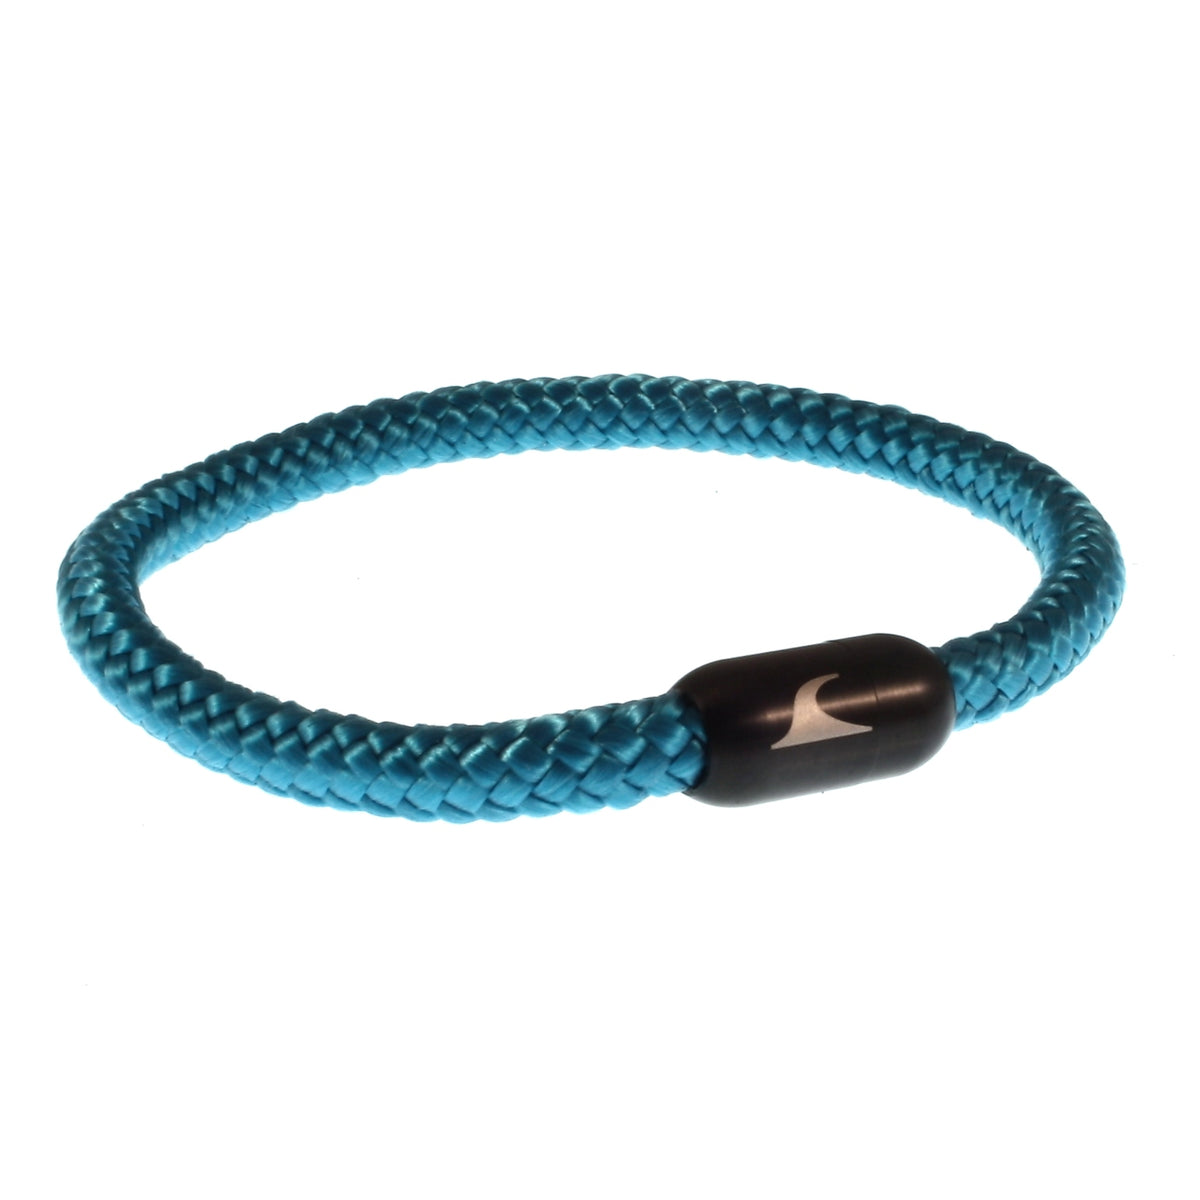 Herren-segeltau-armband-damen-sylt-blau-schwarz-geflochten-Edelstahlverschluss-vorn-wavepirate-shop-st